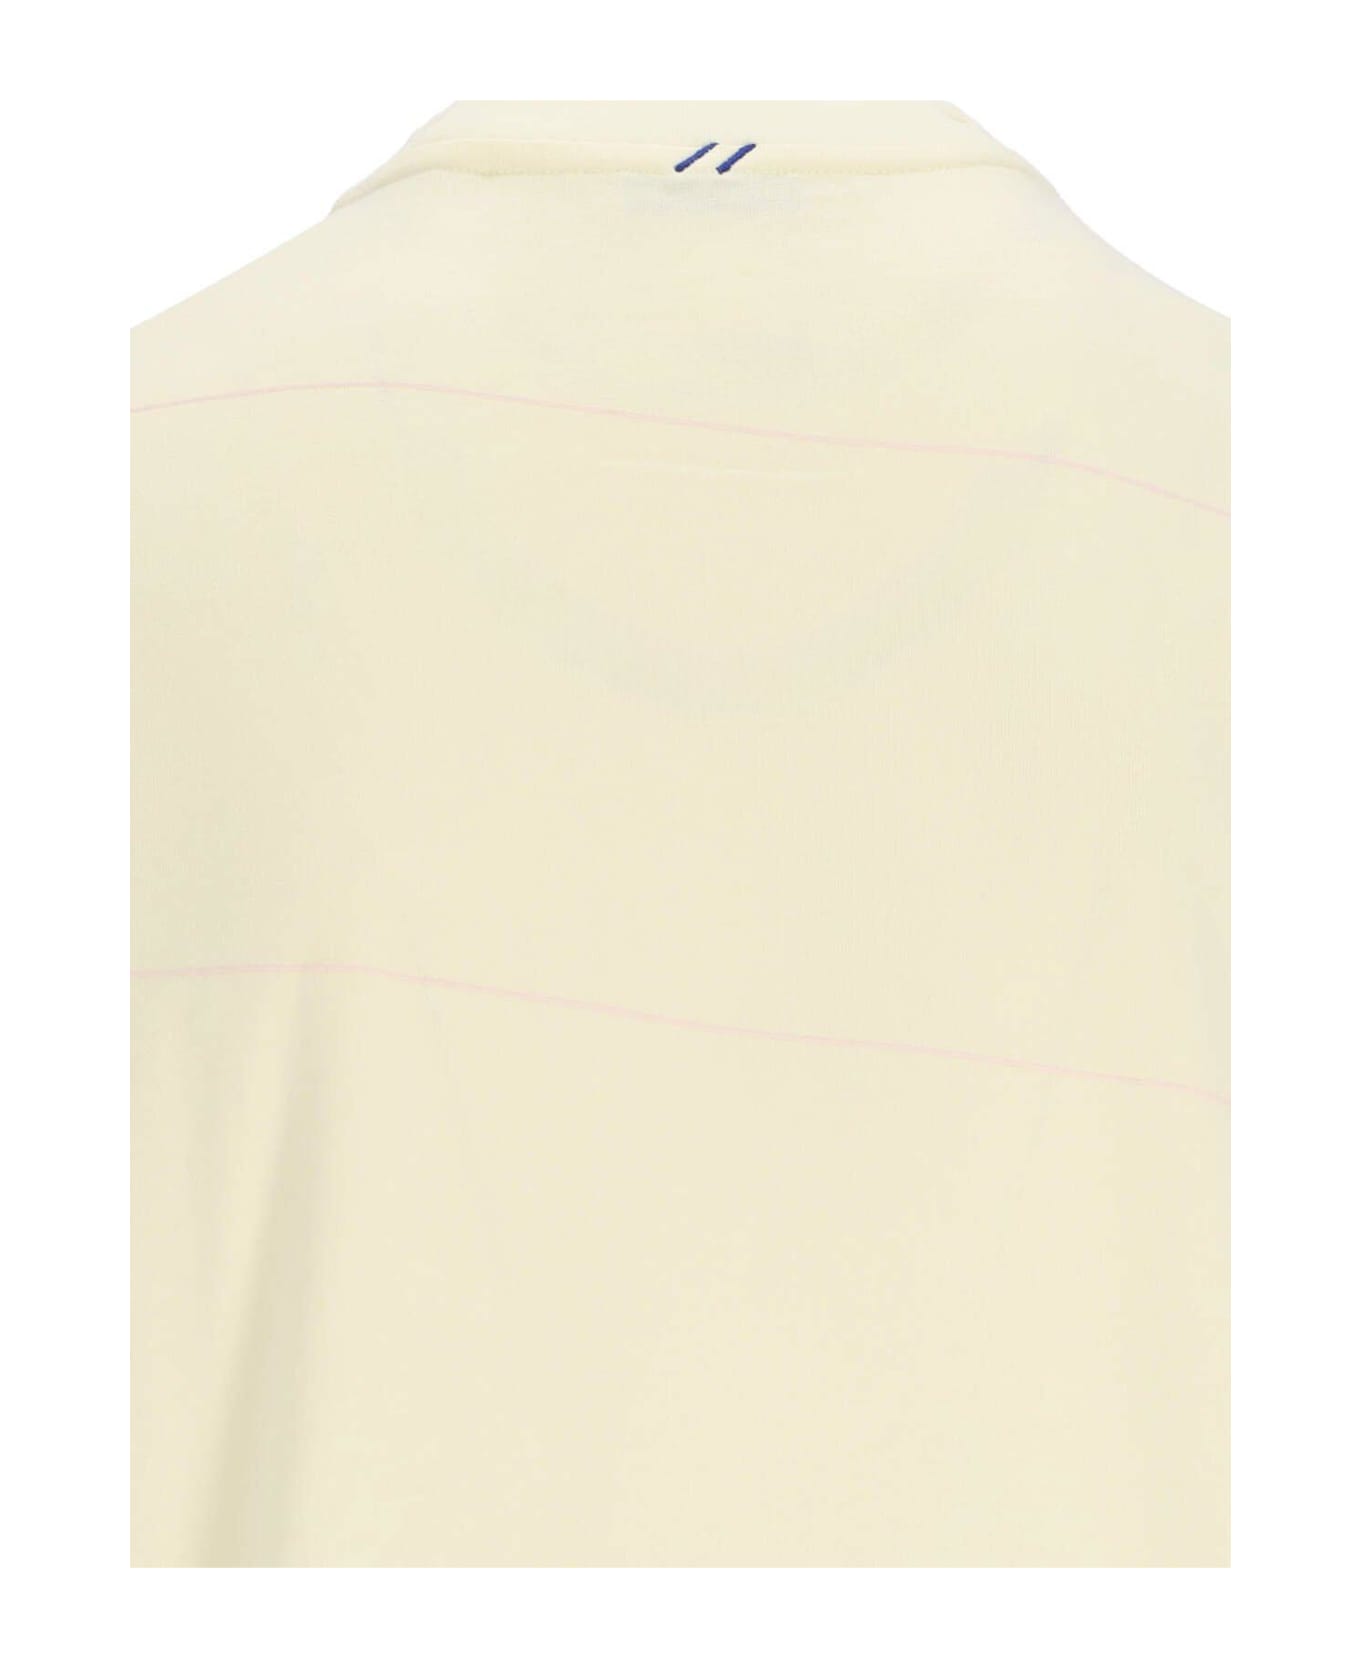 Burberry Crewneck Striped T-shirt - Sherbet